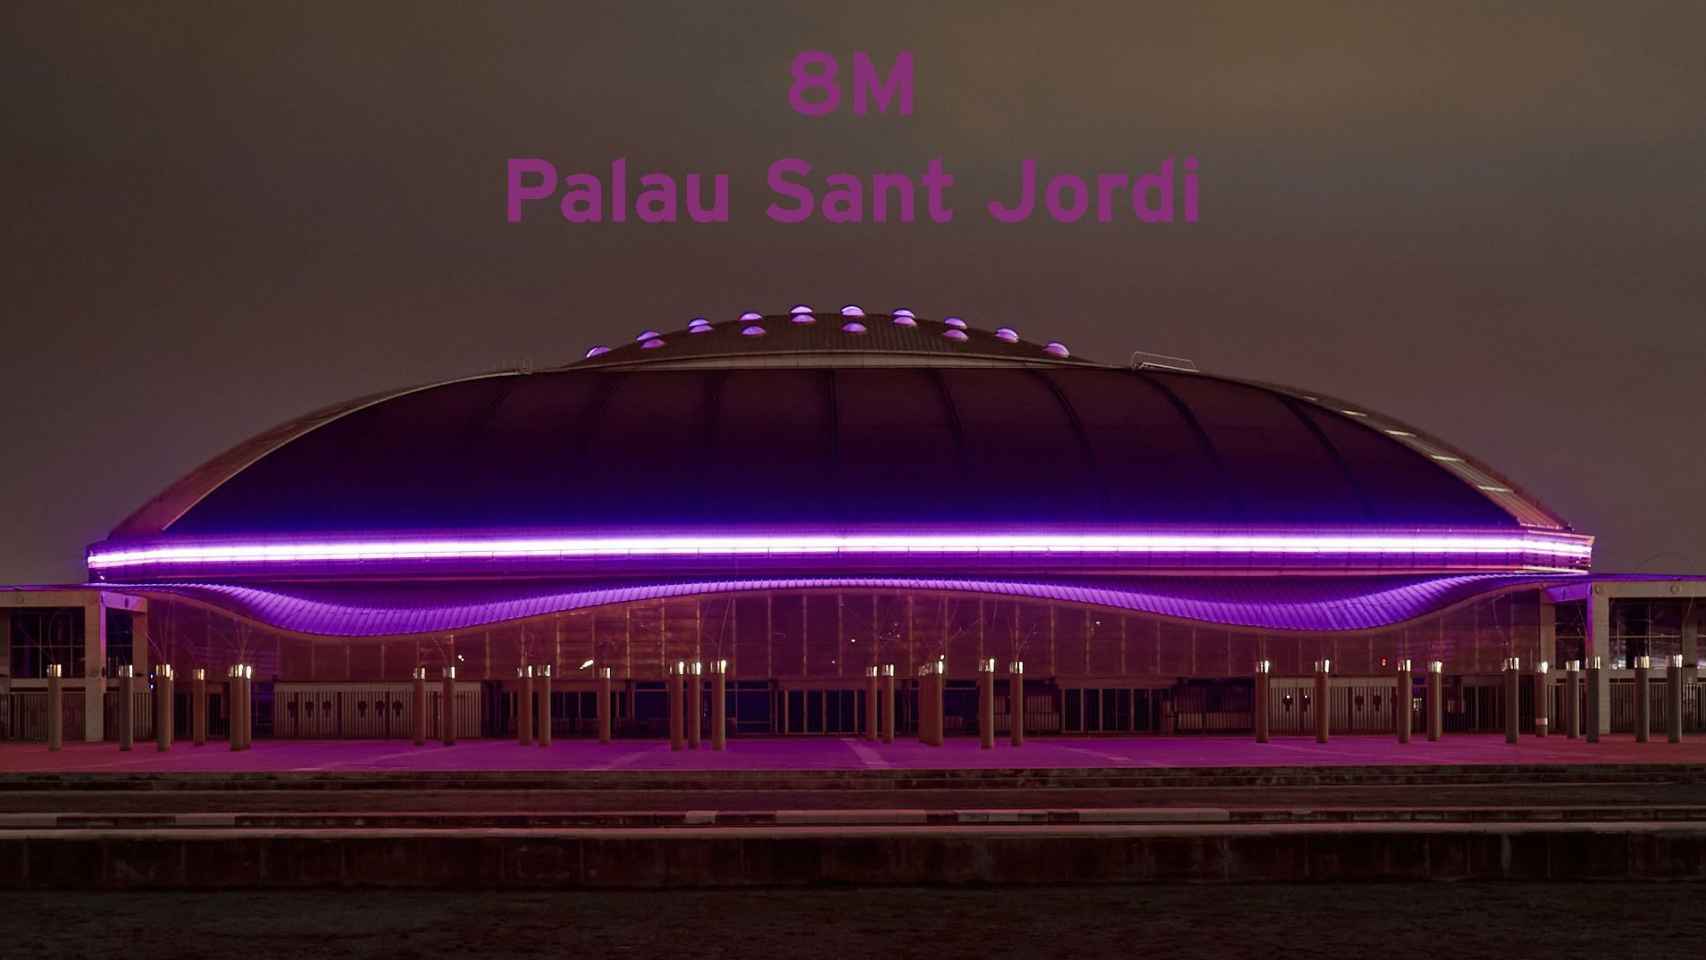 El Palau Sant Jordi, iluminado con luz violeta / PALAU SANT JORDI